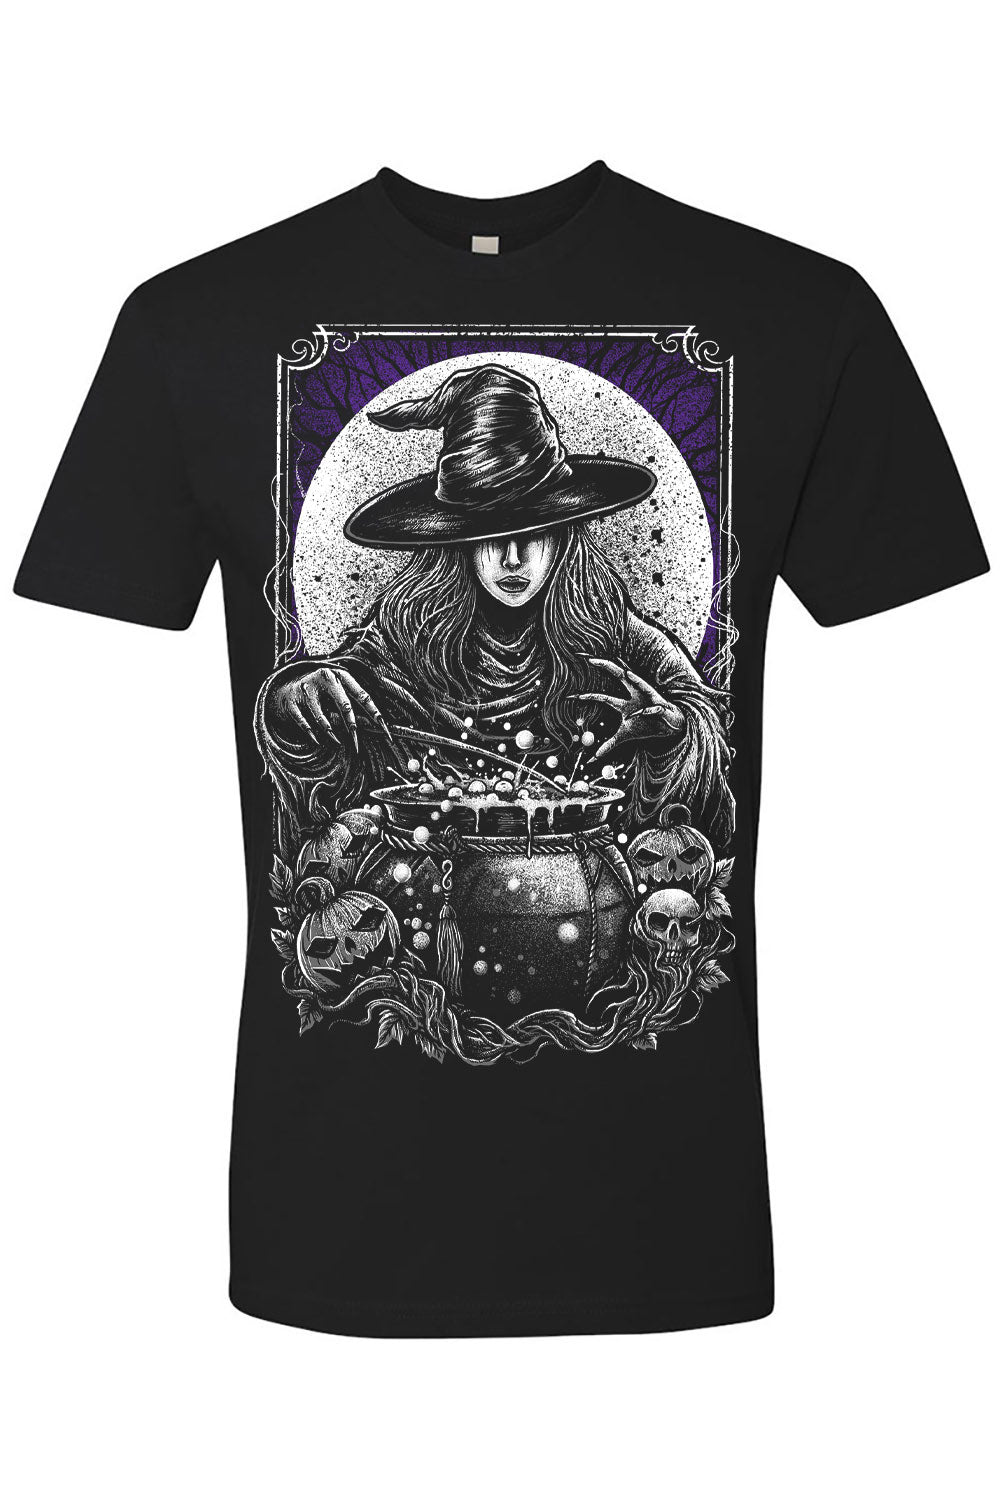 witch cauldron short sleeve shirt